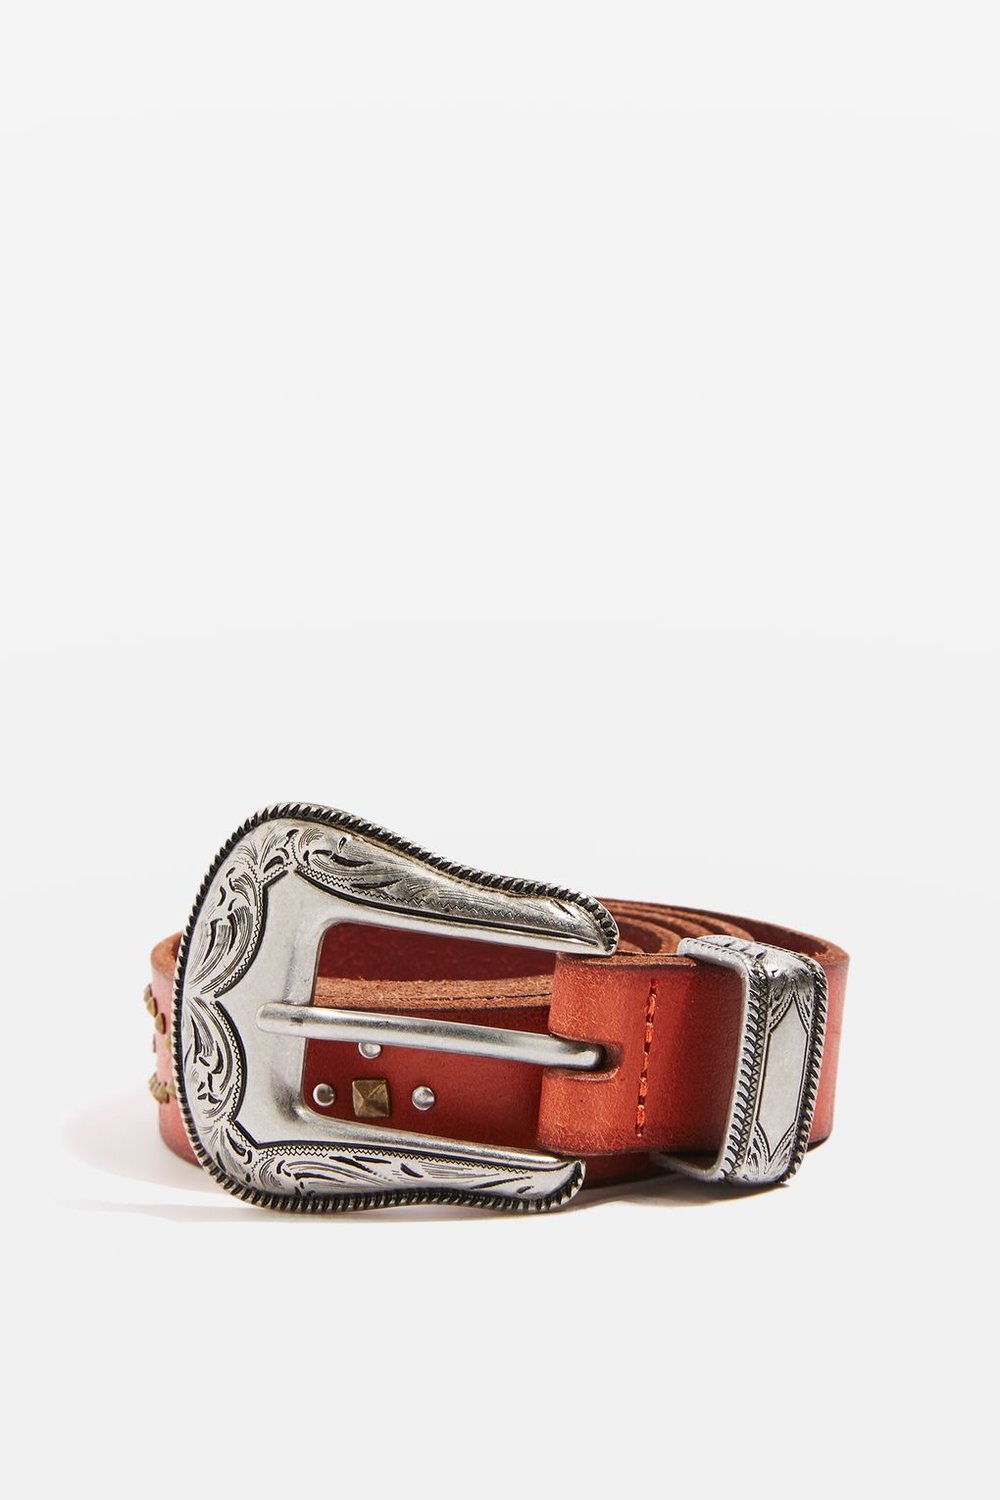 Western style belt